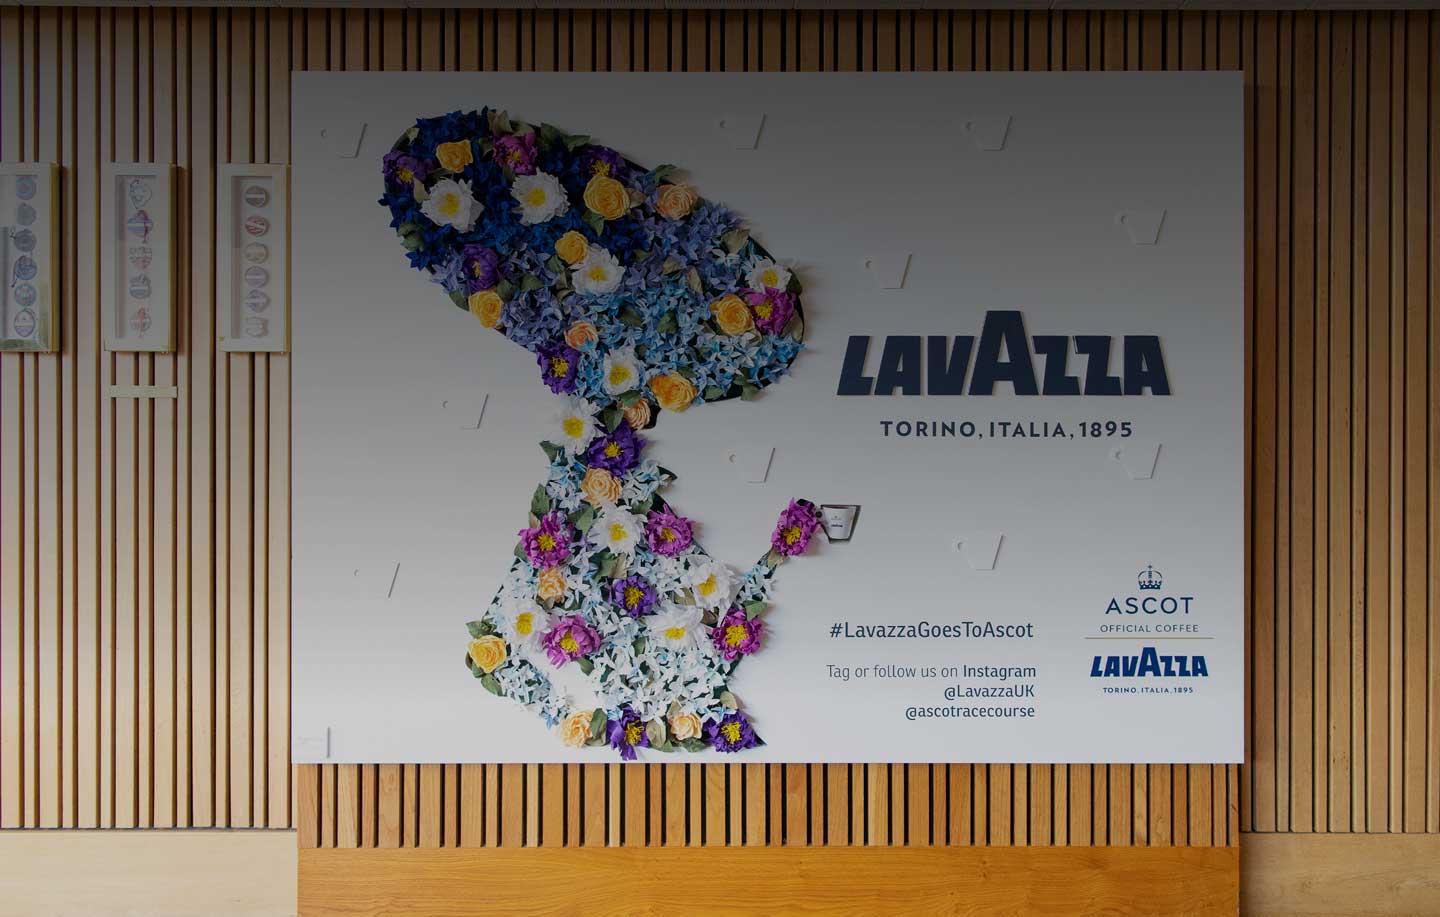 Royal Ascot et Lavazza : le partage des mêmes valeurs